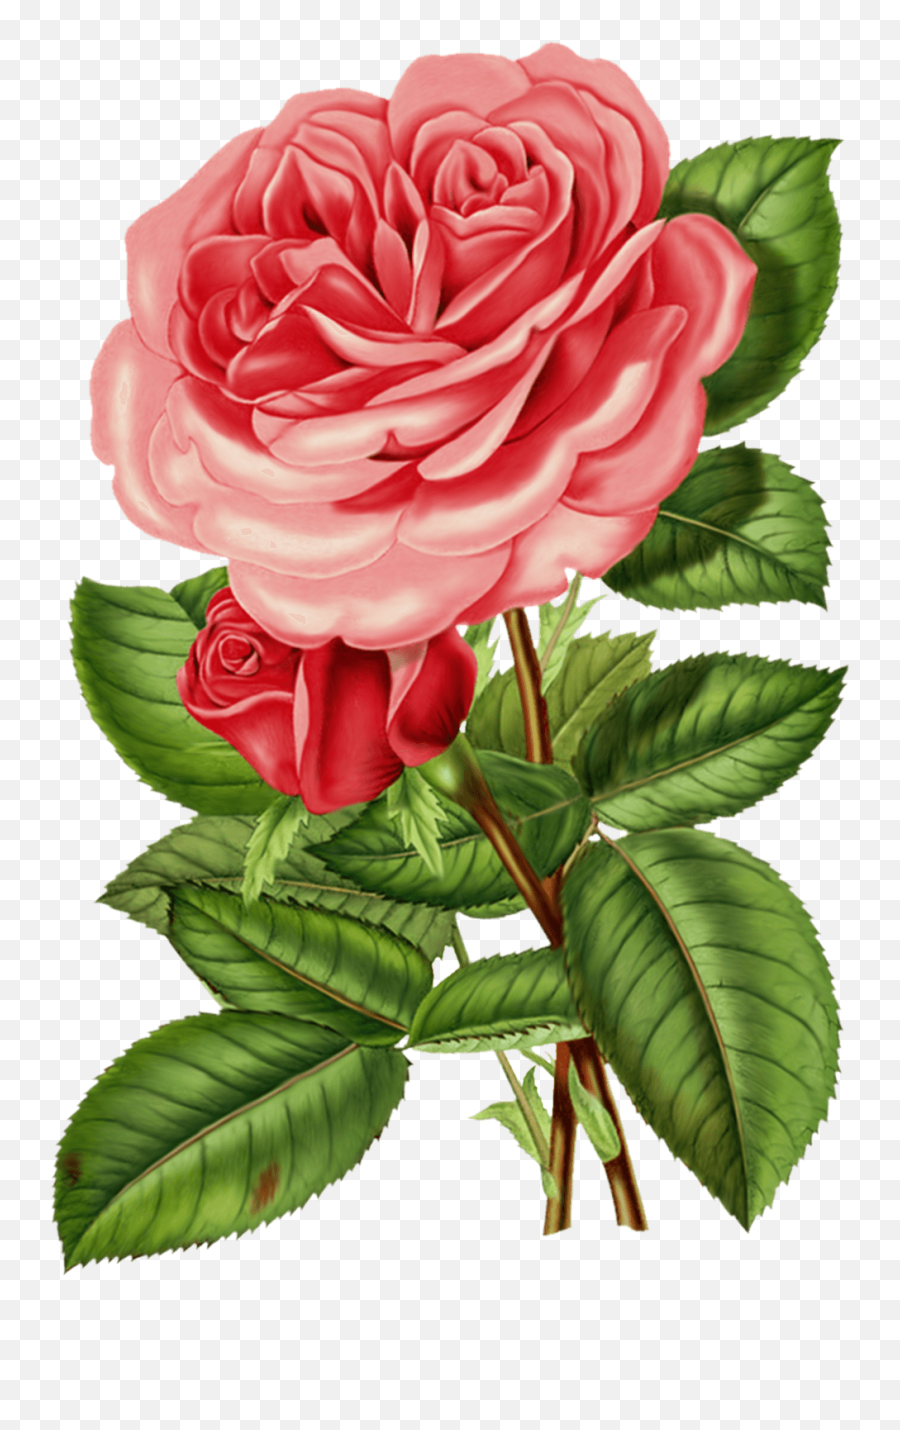 Vintage Rose Png Images Collection For - Victorian Rose Png,Rose Transparent